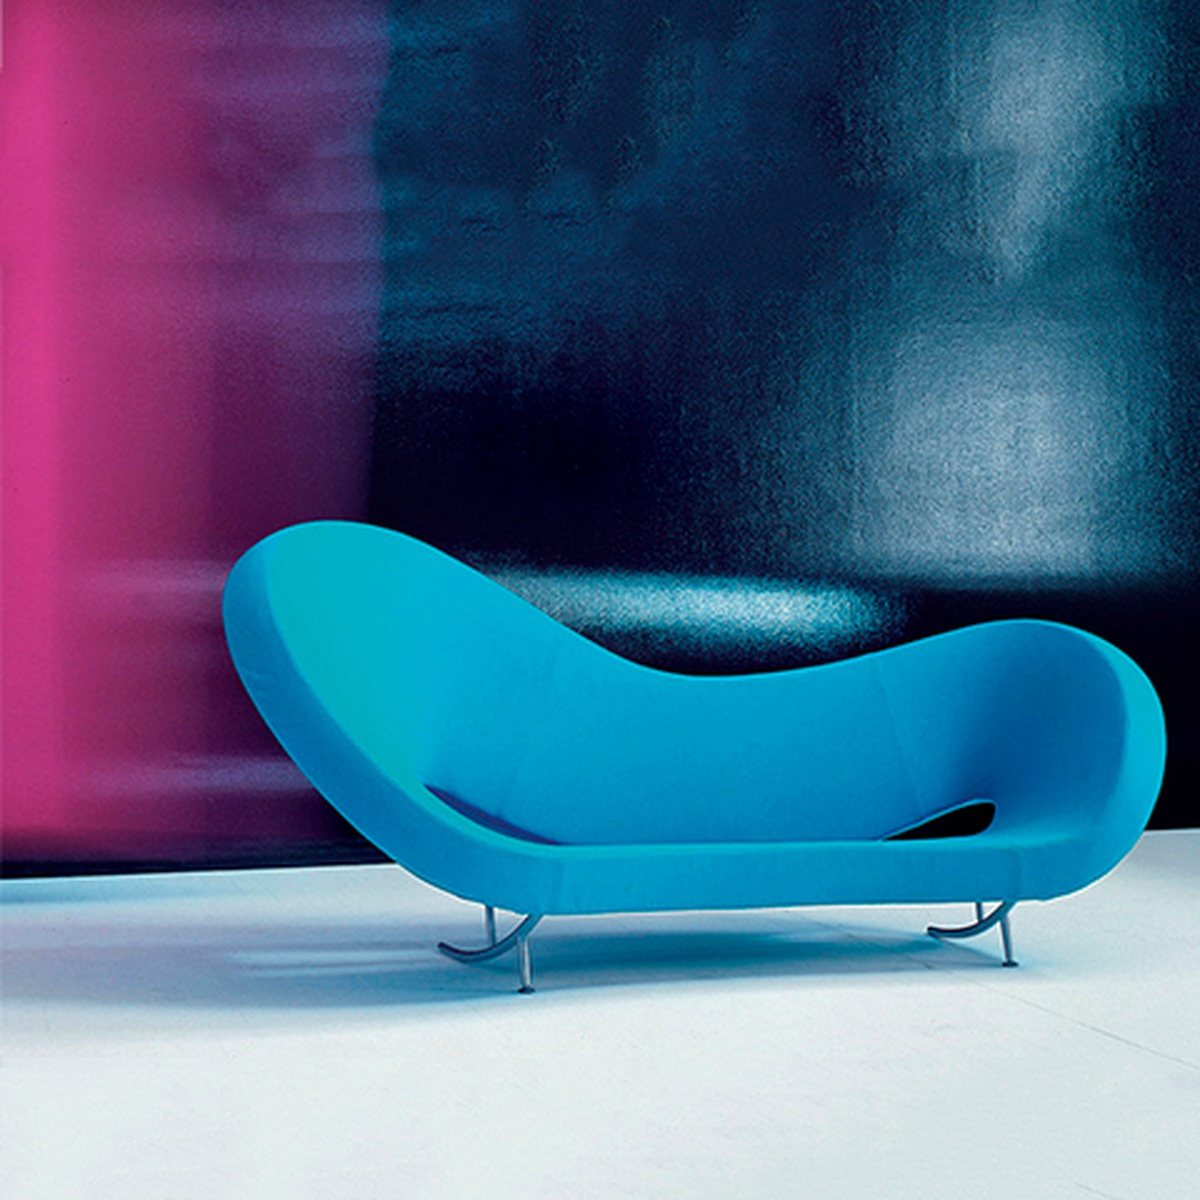 Storia Design Moroso, divano Victoria and Albert, Ron Arad, resina di poliestere, poliuretano espanso indeformabile, 2000